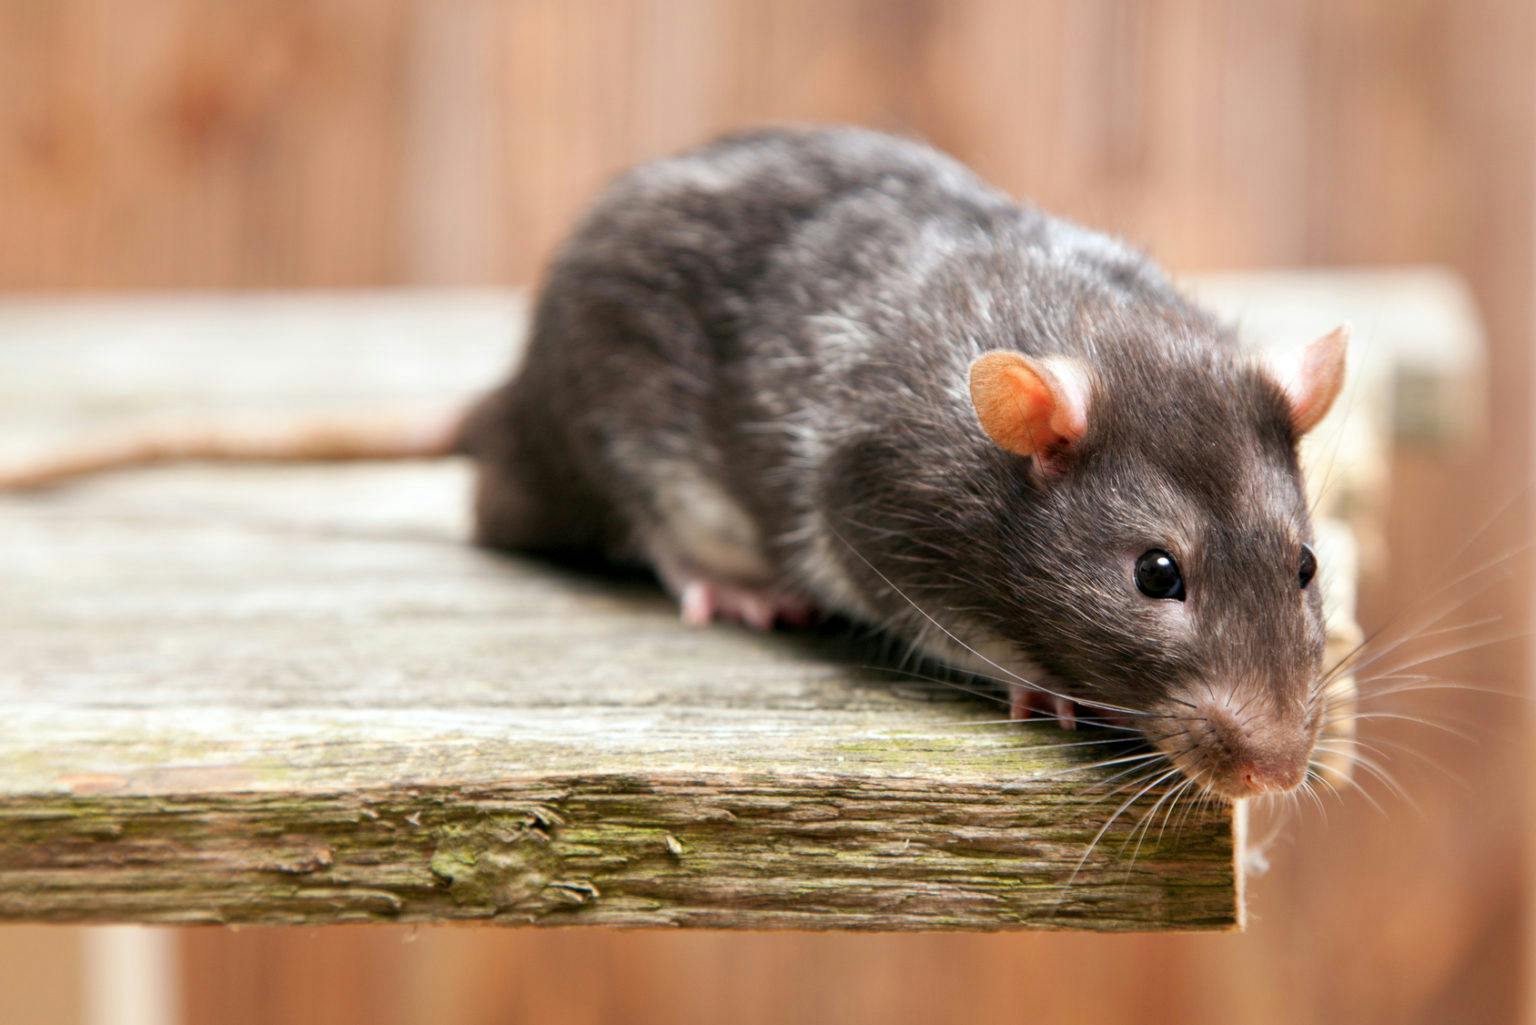 Les rats et les différents outils de lutte contre les rats